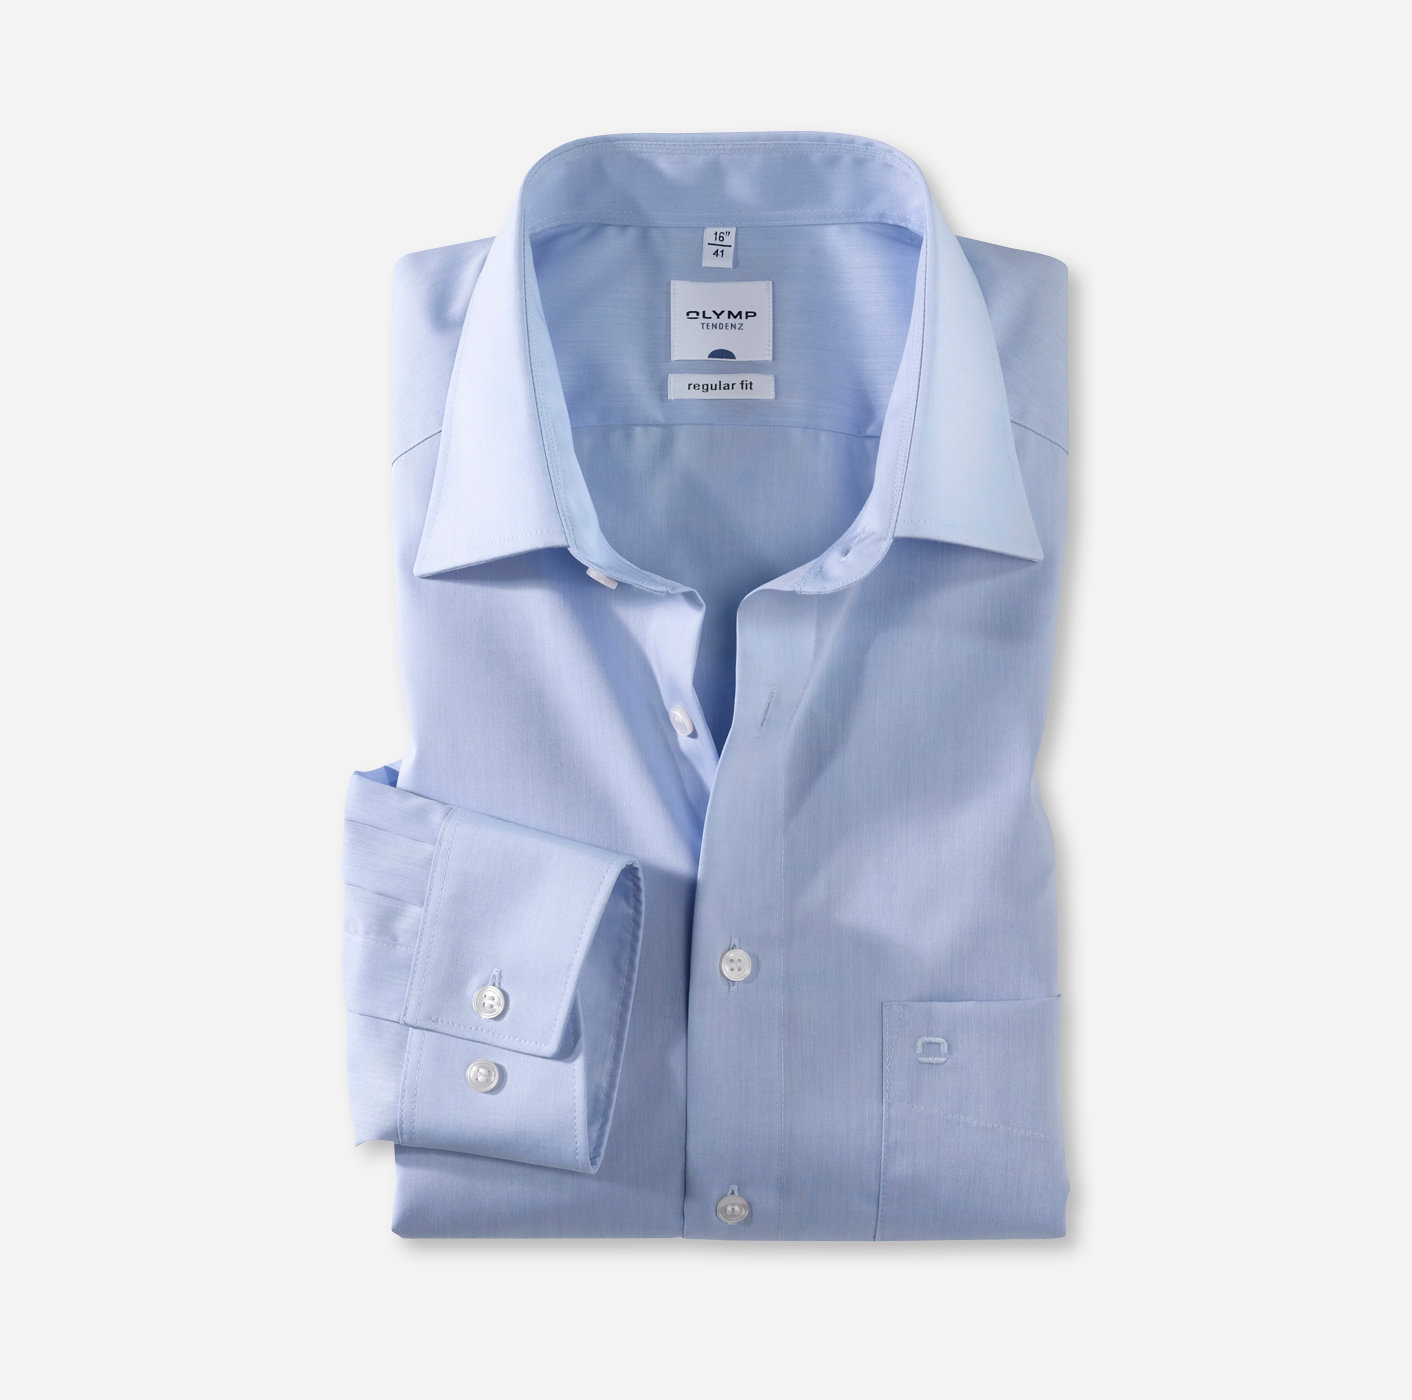 OLYMP Tendenz, regular fit, Business shirt, New Kent, Bleu